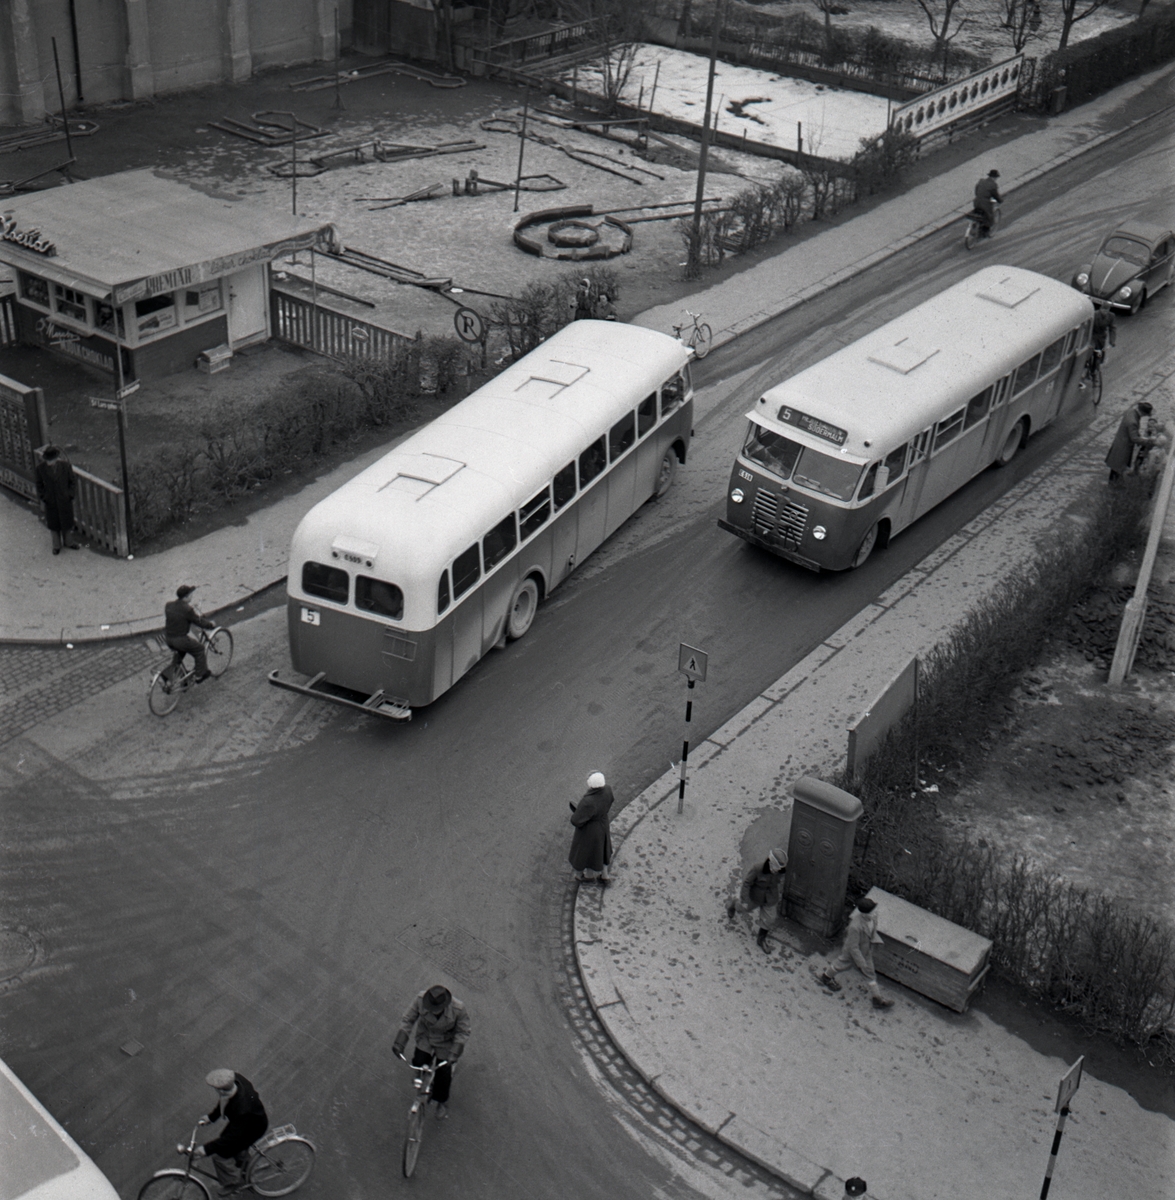 Hörnet S:t Larsgatan, Drottninggatan med Cloettas kiosk och minigolfbanan. Gatukorsning. Bussar. Trafik. År 1950.